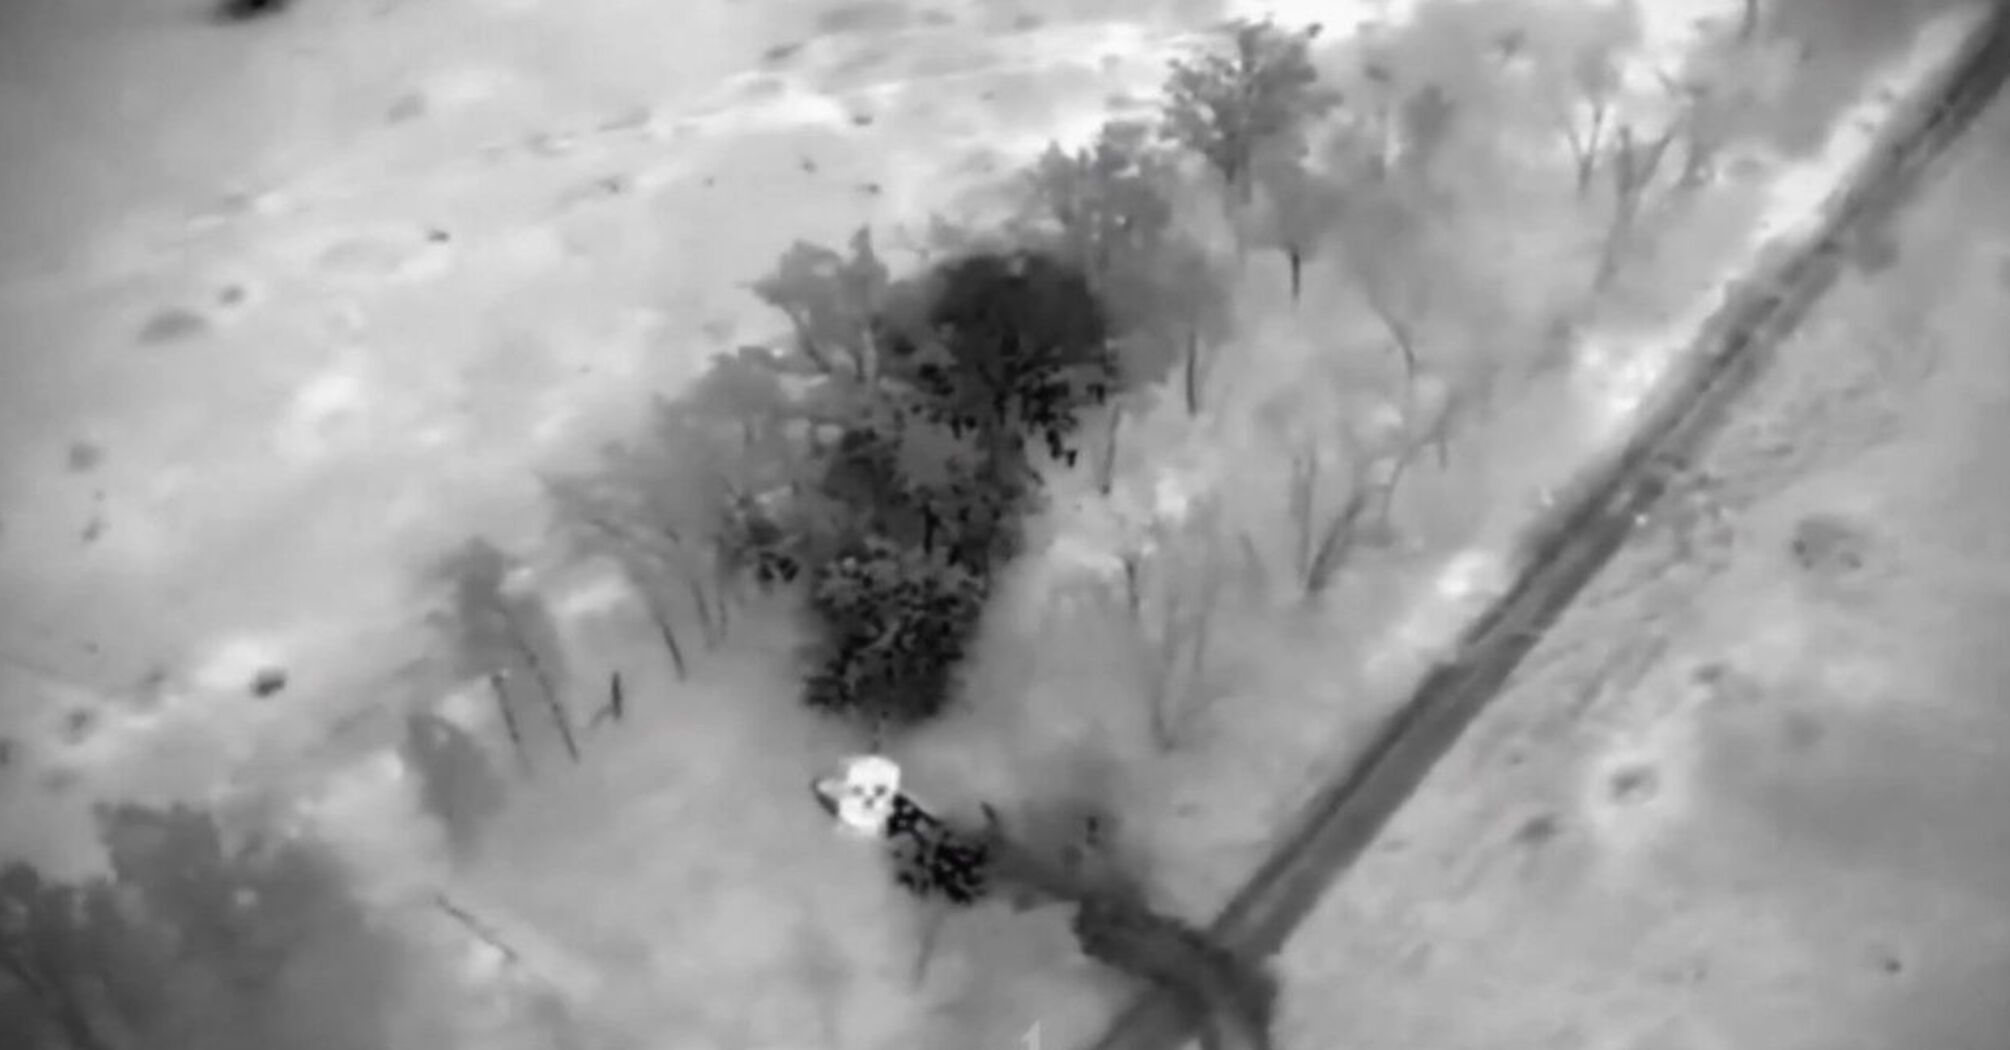 Танк Leopard расстреливает пехоту оккупантов: зажигательное видео